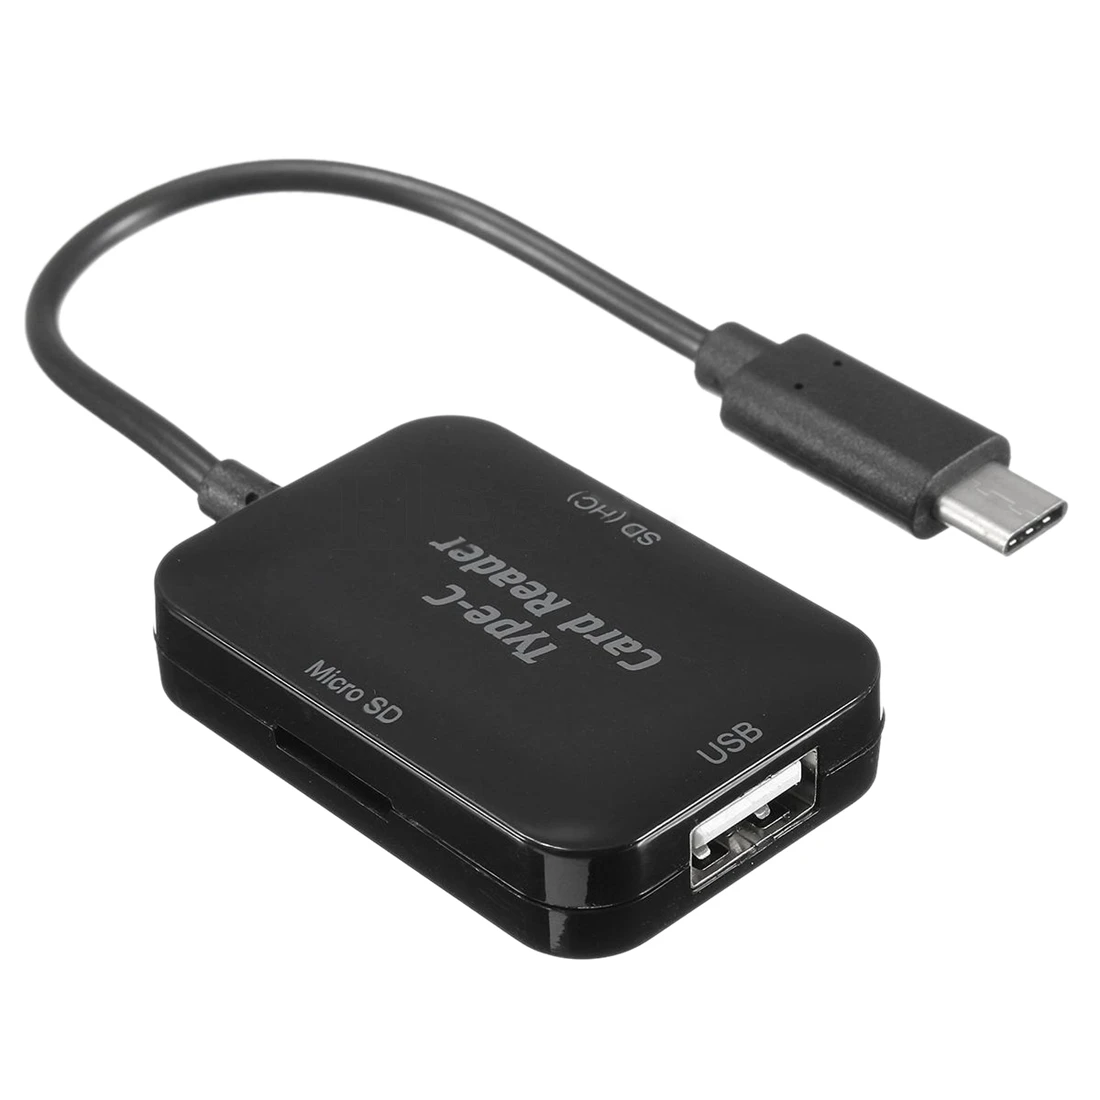 Usb type C на USB 2,0 концентратор SD TF устройство чтения карт памяти OTG адаптер для Macbook 12 дюймов черный